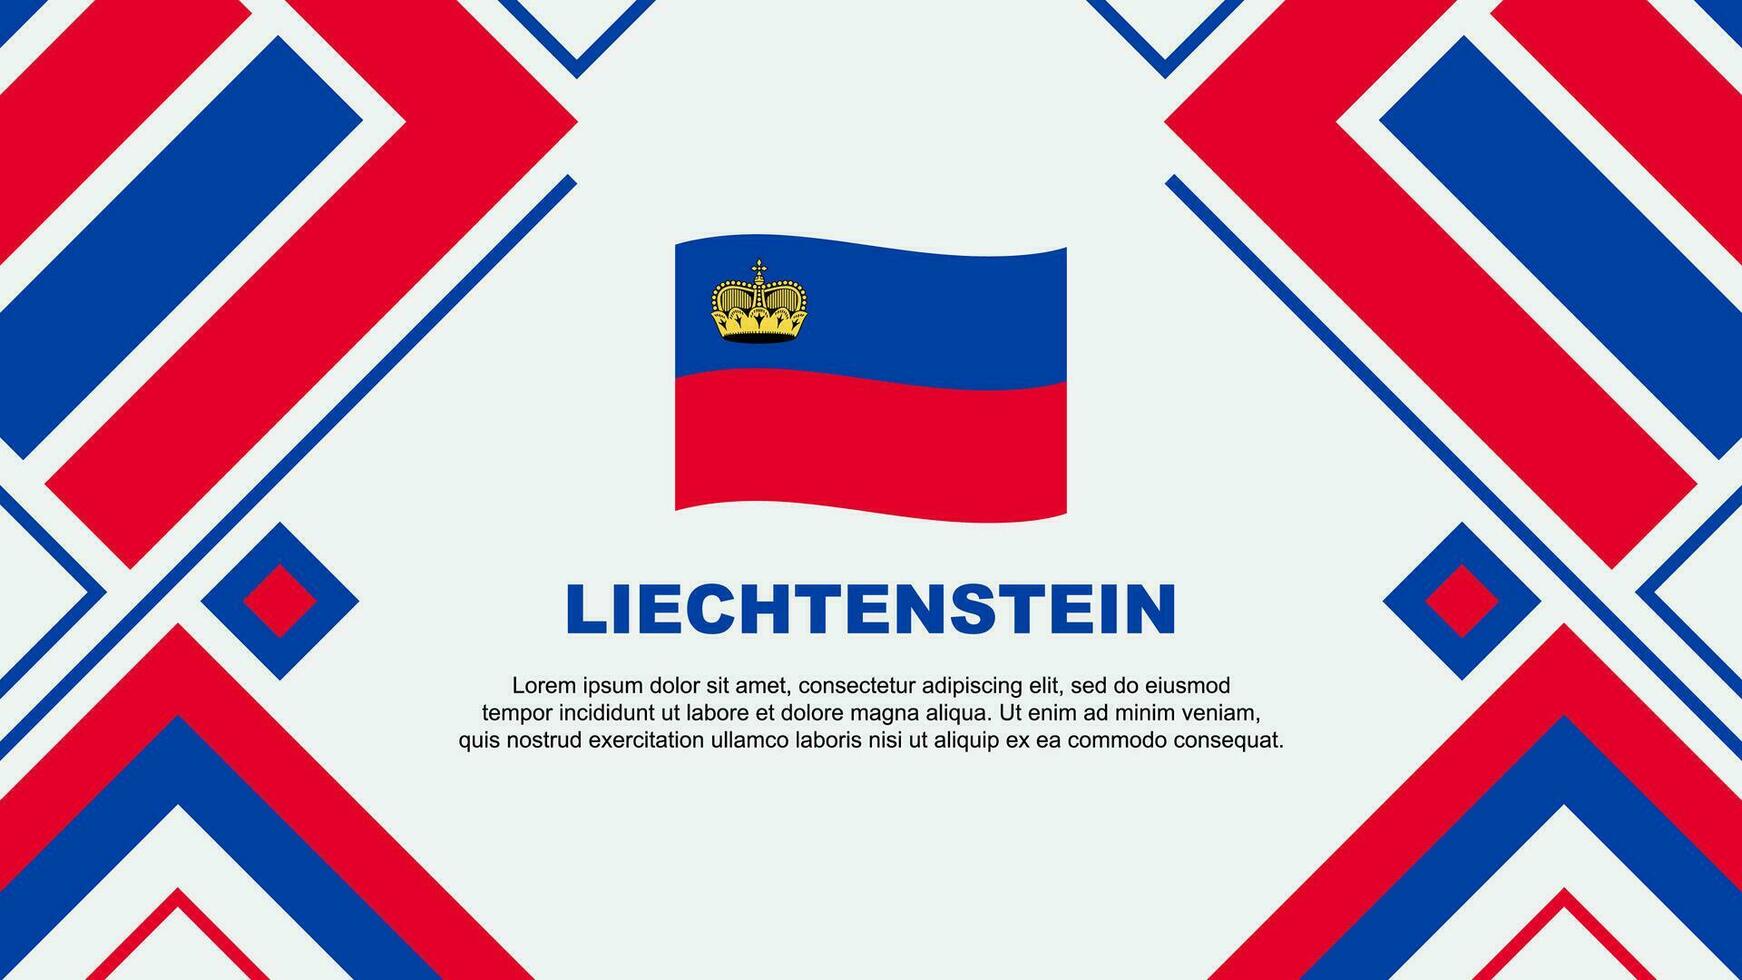 Liechtenstein Flag Abstract Background Design Template. Liechtenstein Independence Day Banner Wallpaper Vector Illustration. Liechtenstein Flag